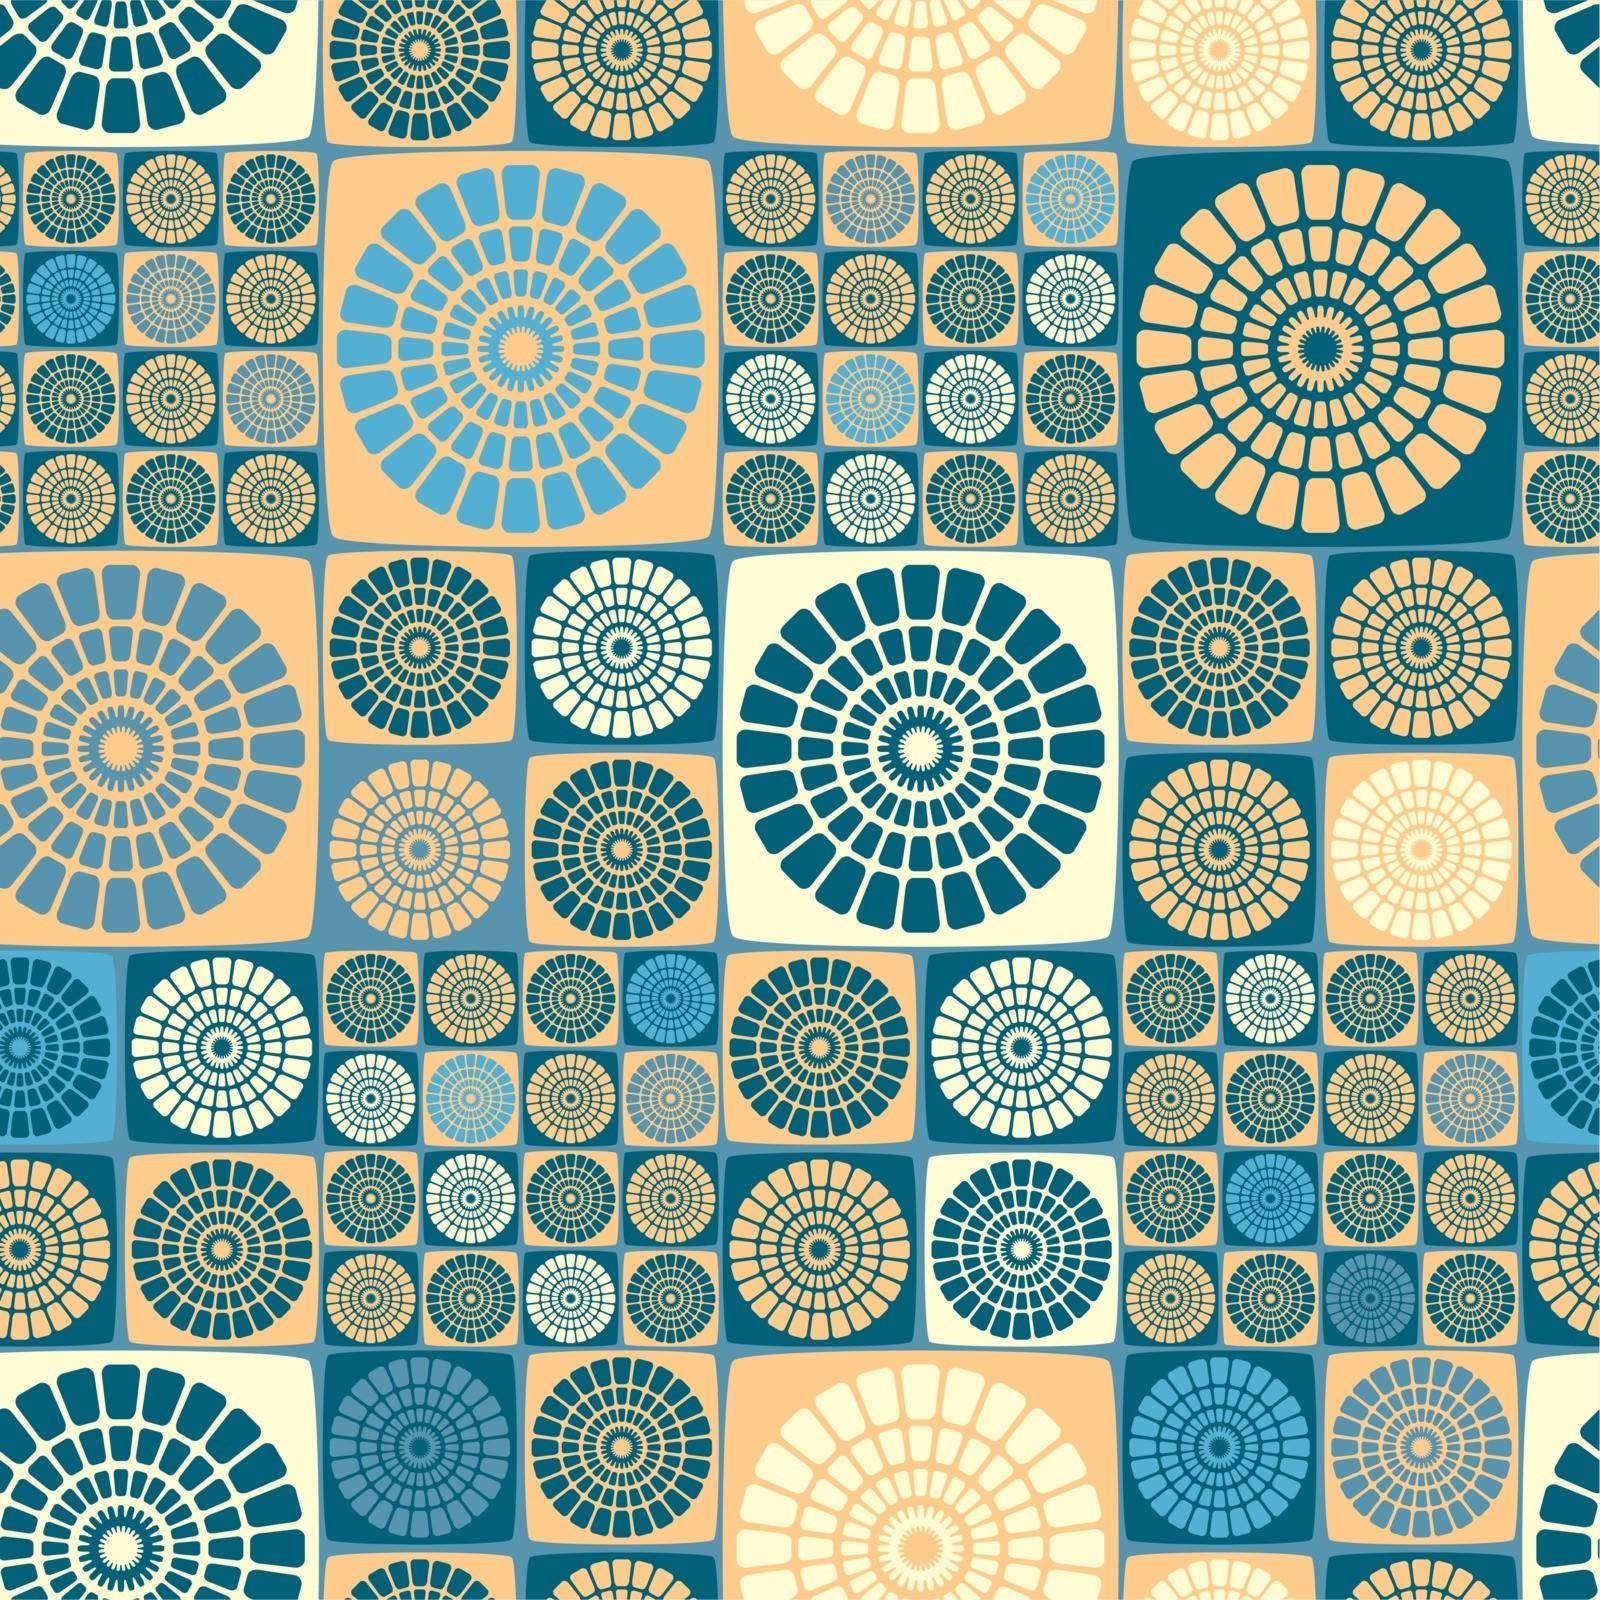 geometrical wallpaper by SanyaL